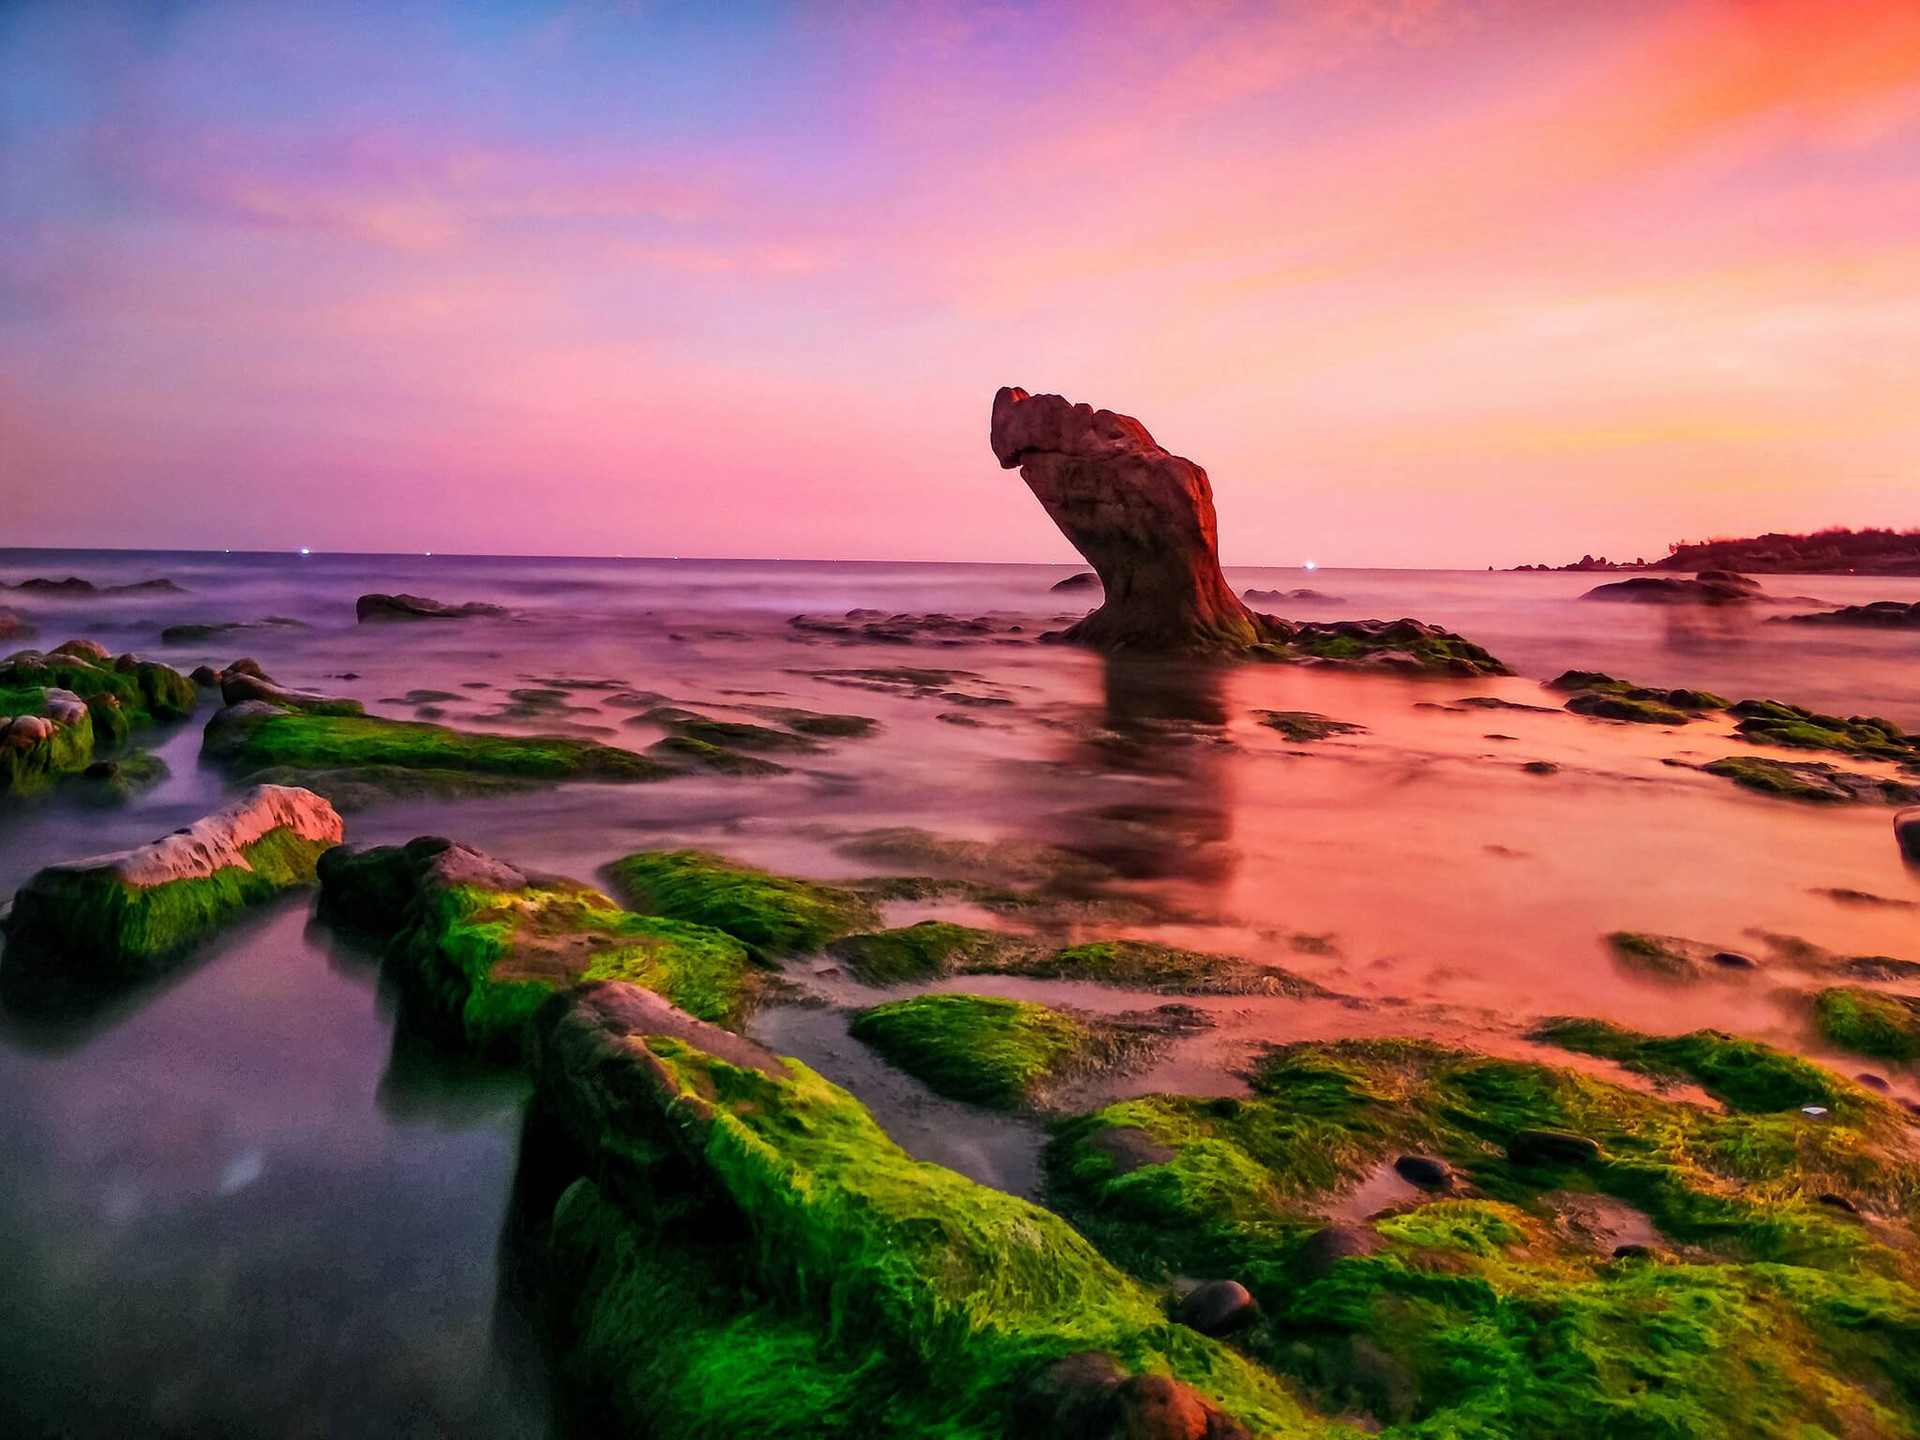 Bãi biển Cổ Thạch còn được gọi với cái tên khác là bãi đá bảy màu